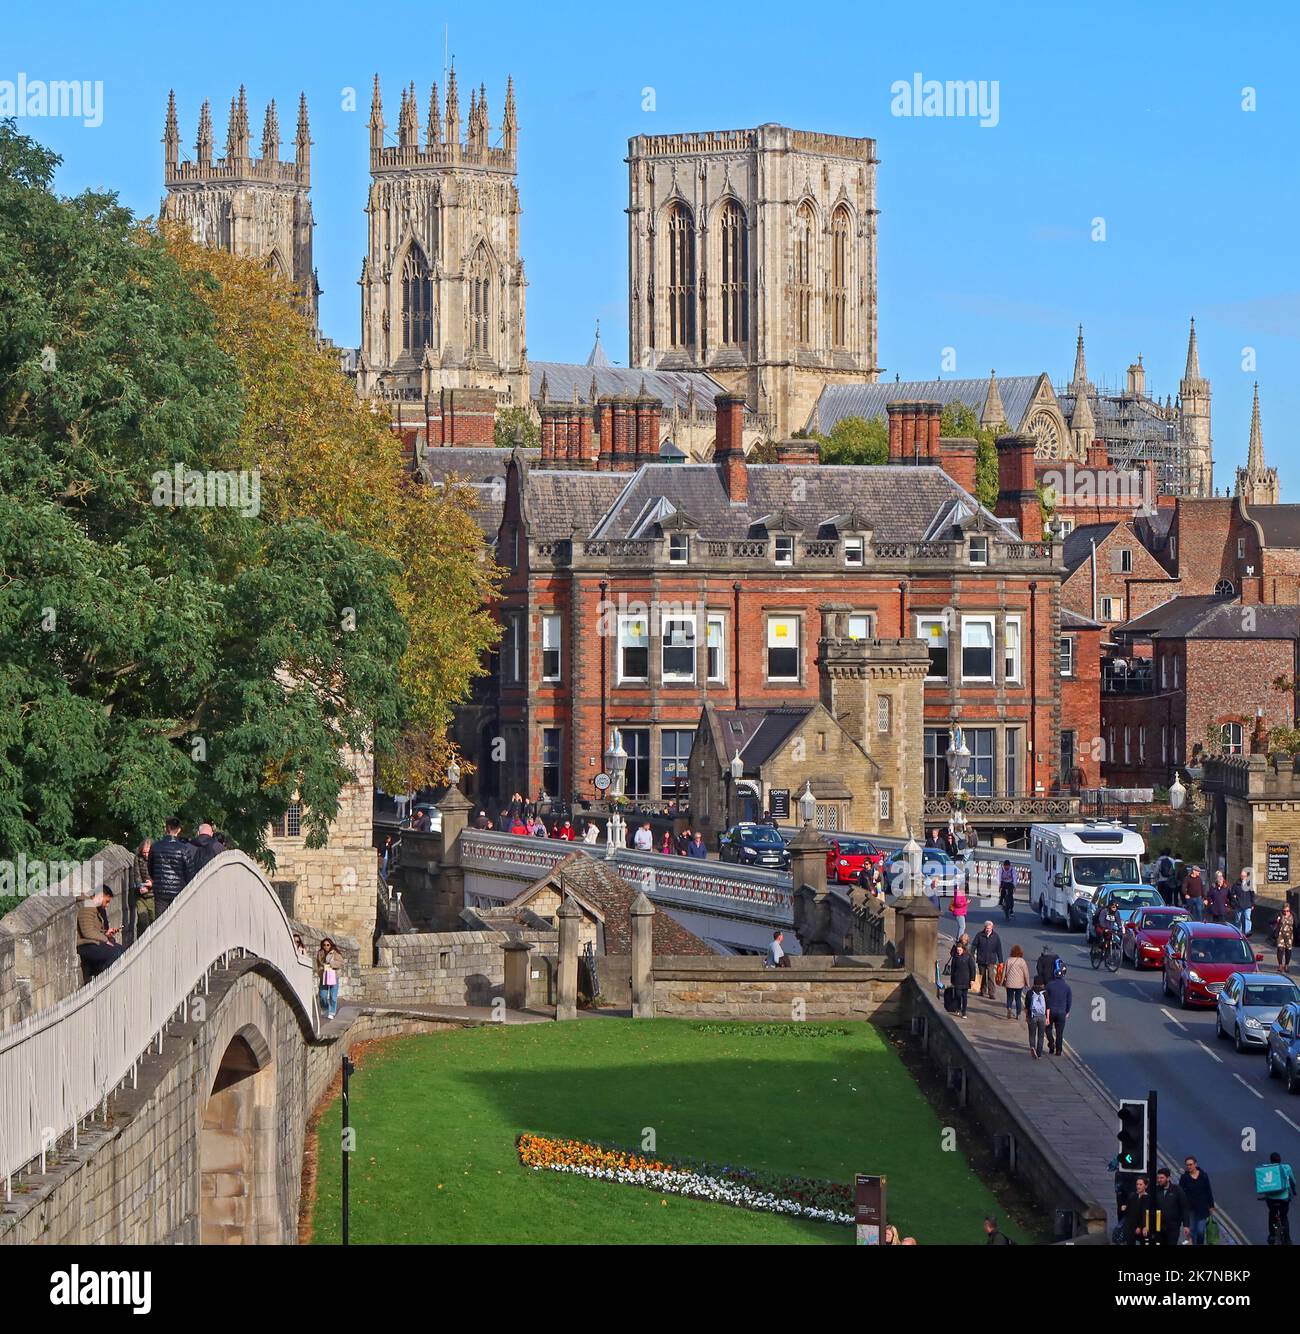 York Minster, cathédrale, et église métropolitique de Saint Pierre, mur et rivière vu de la ville de York, Yorkshire, Angleterre, Royaume-Uni, YO1 6GD Banque D'Images